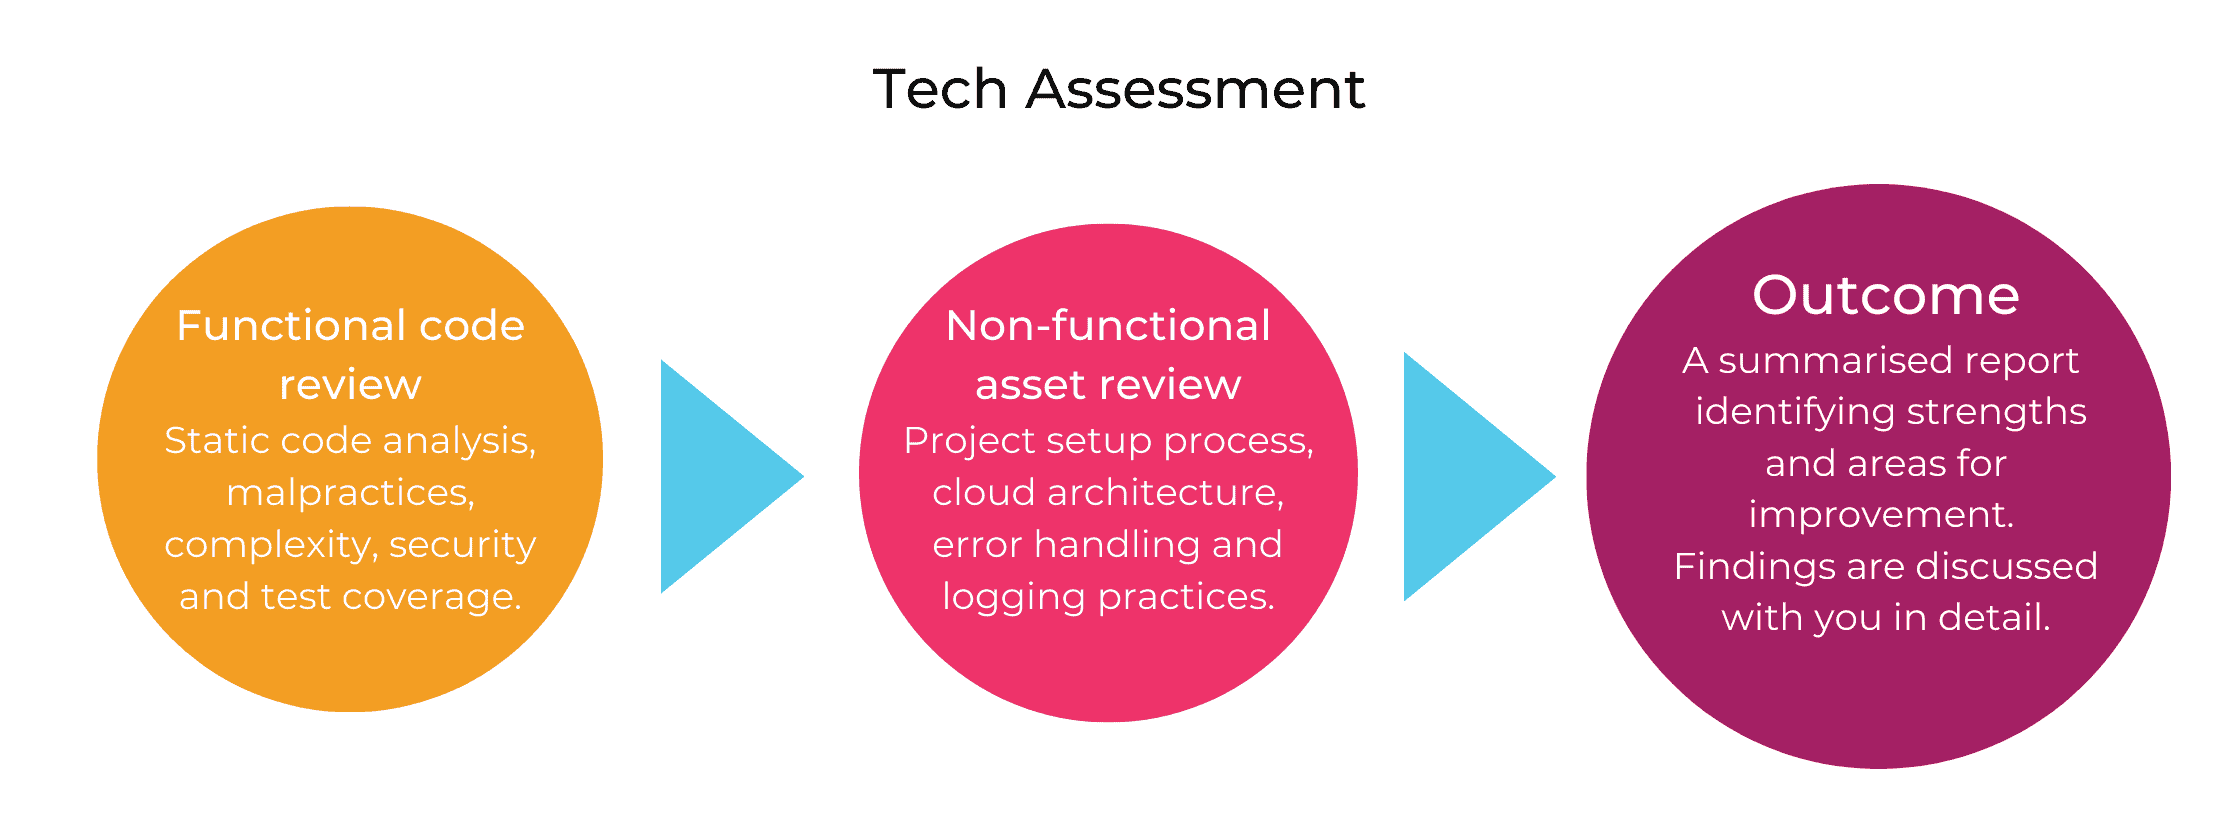 Tech Assessment